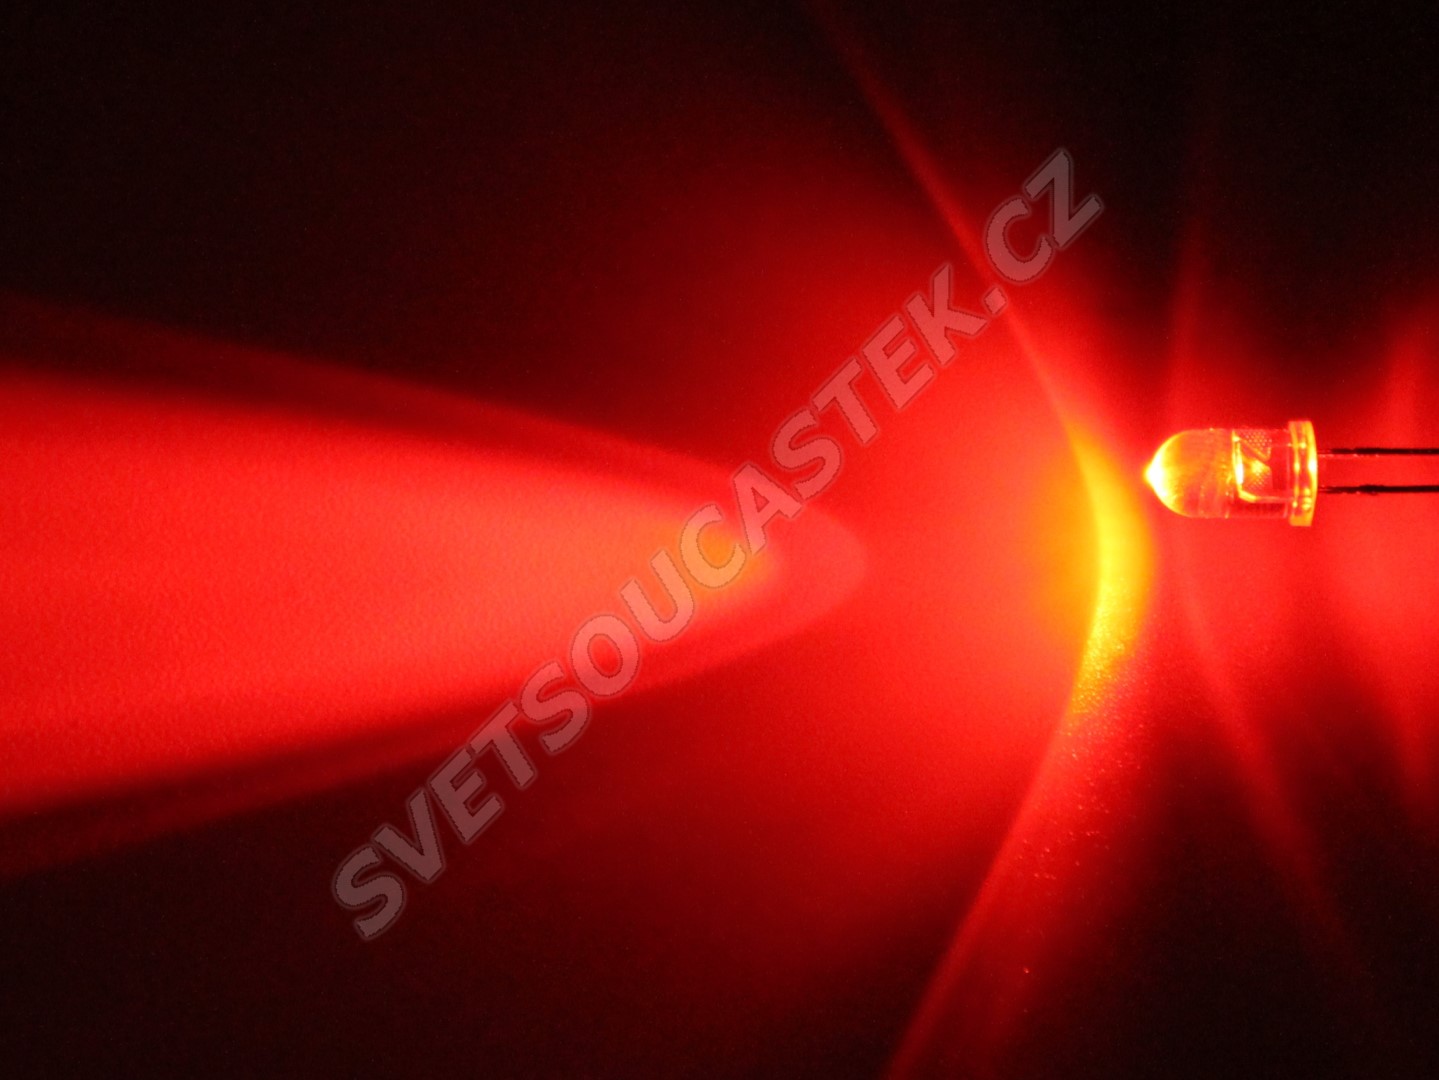 LED 5mm červená 4500mcd/23° čirá Hebei 520HR3C